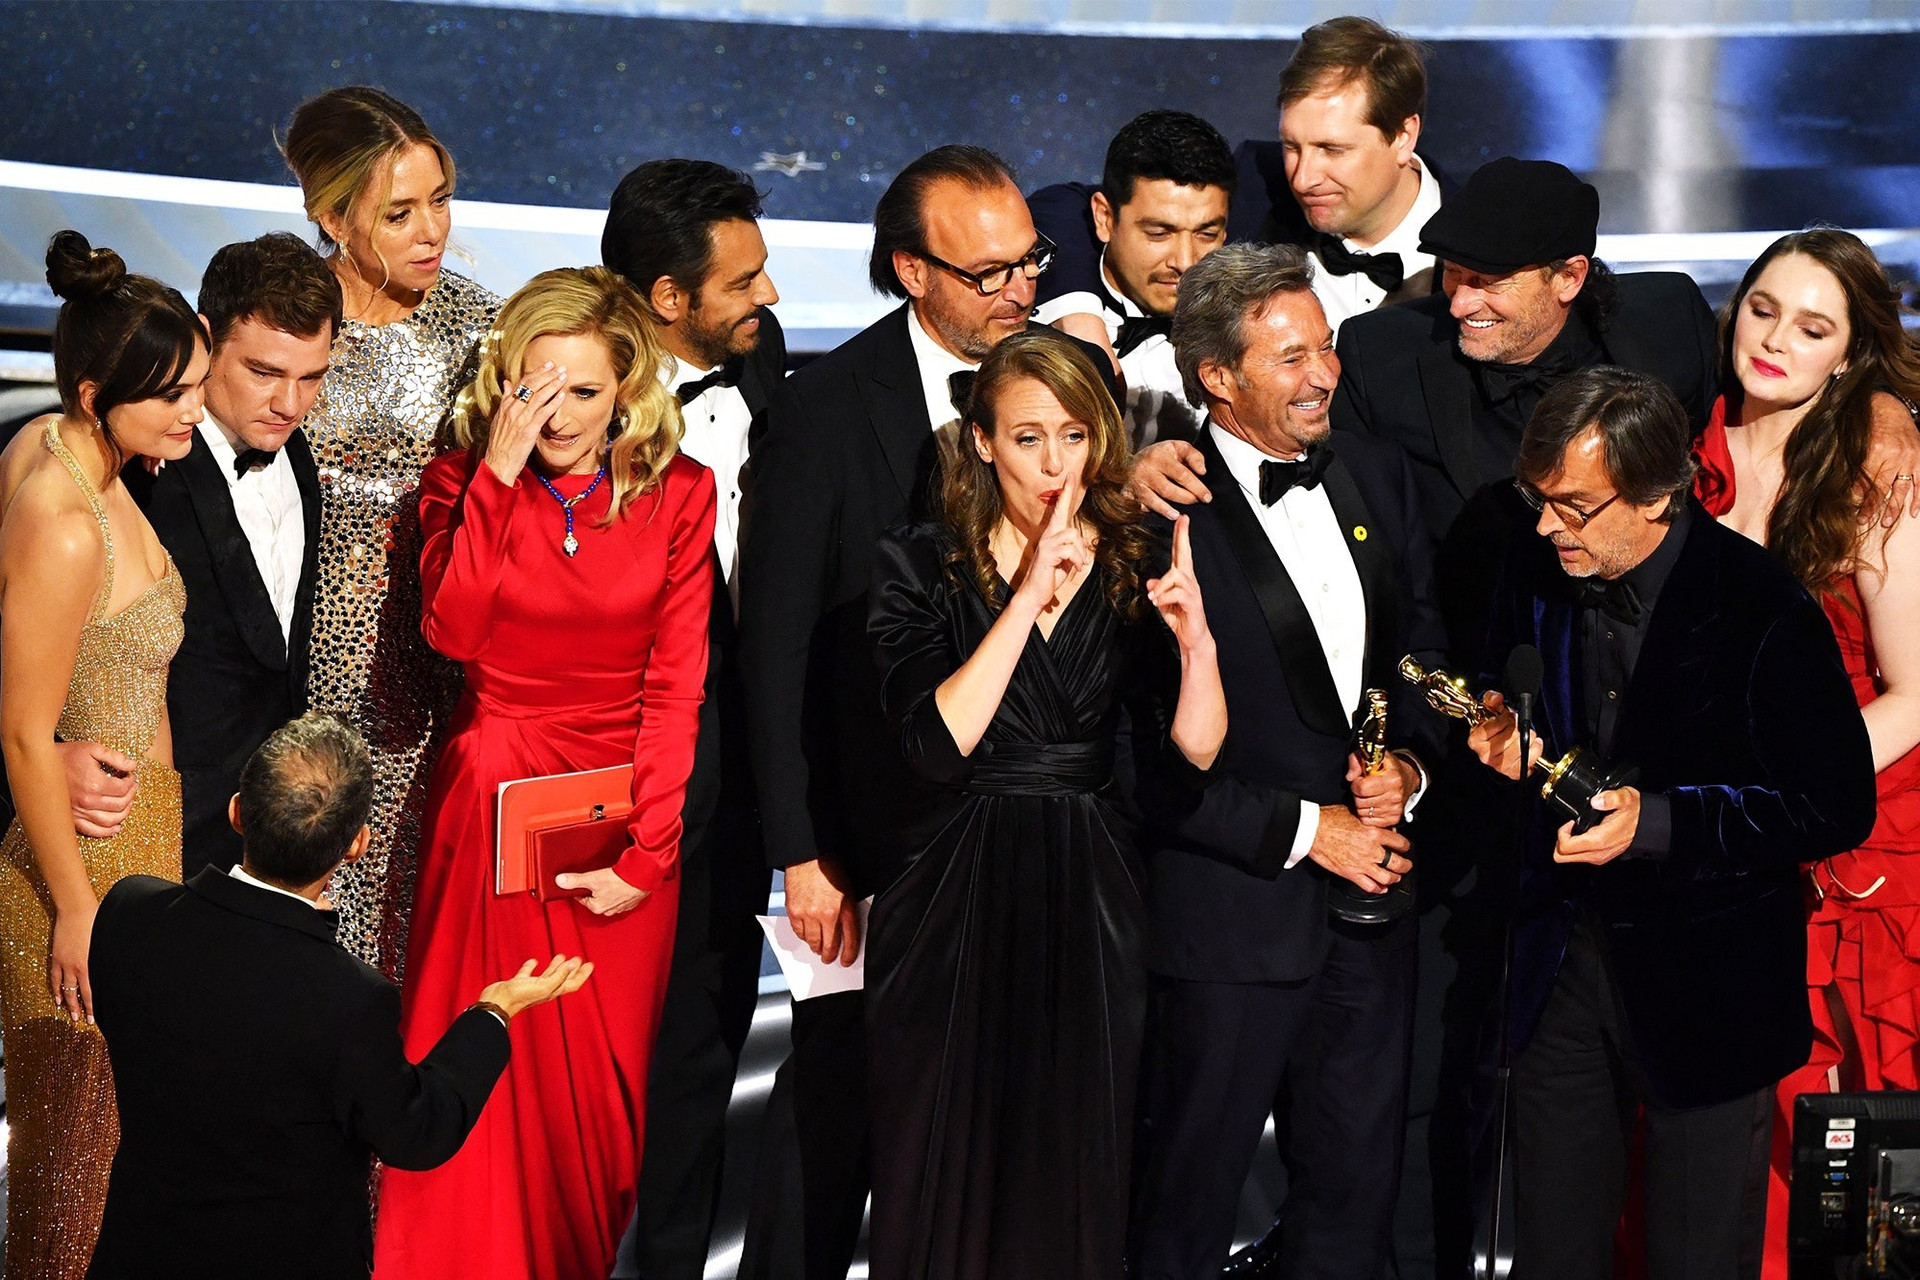 Đoàn phim “Giai điệu con tim” (CODA) trên sân khấu nhận giải Oscar Phim hay nhất 2022. Ảnh: AFP